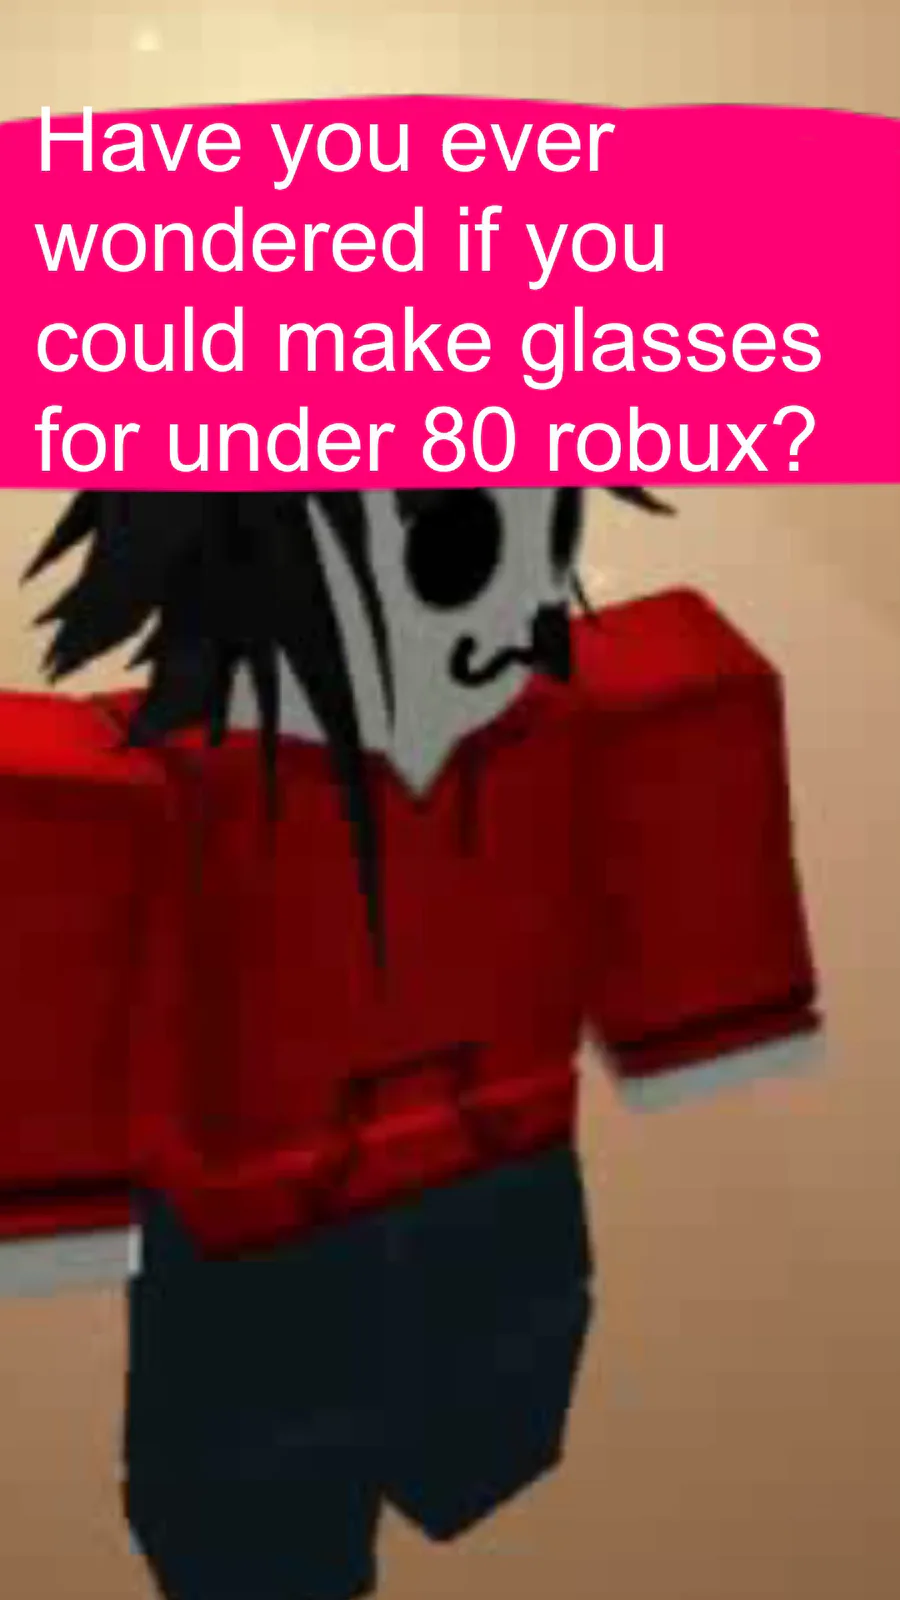 Quanto custa 80 Robux?